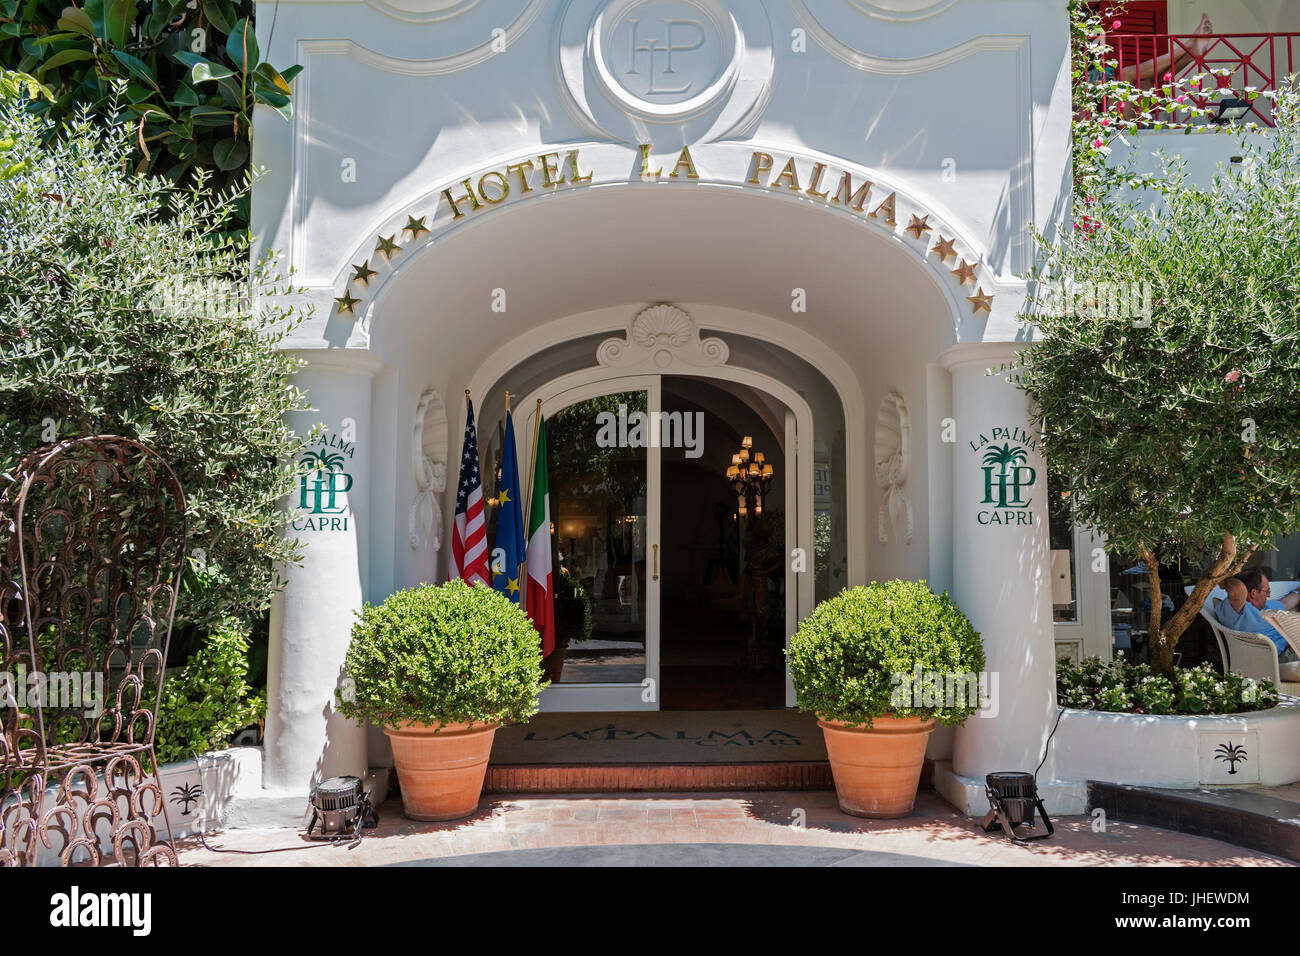 Les quatre étoiles hôtel La Palma est le plus ancien hôtel de l'île de Capri. Banque D'Images